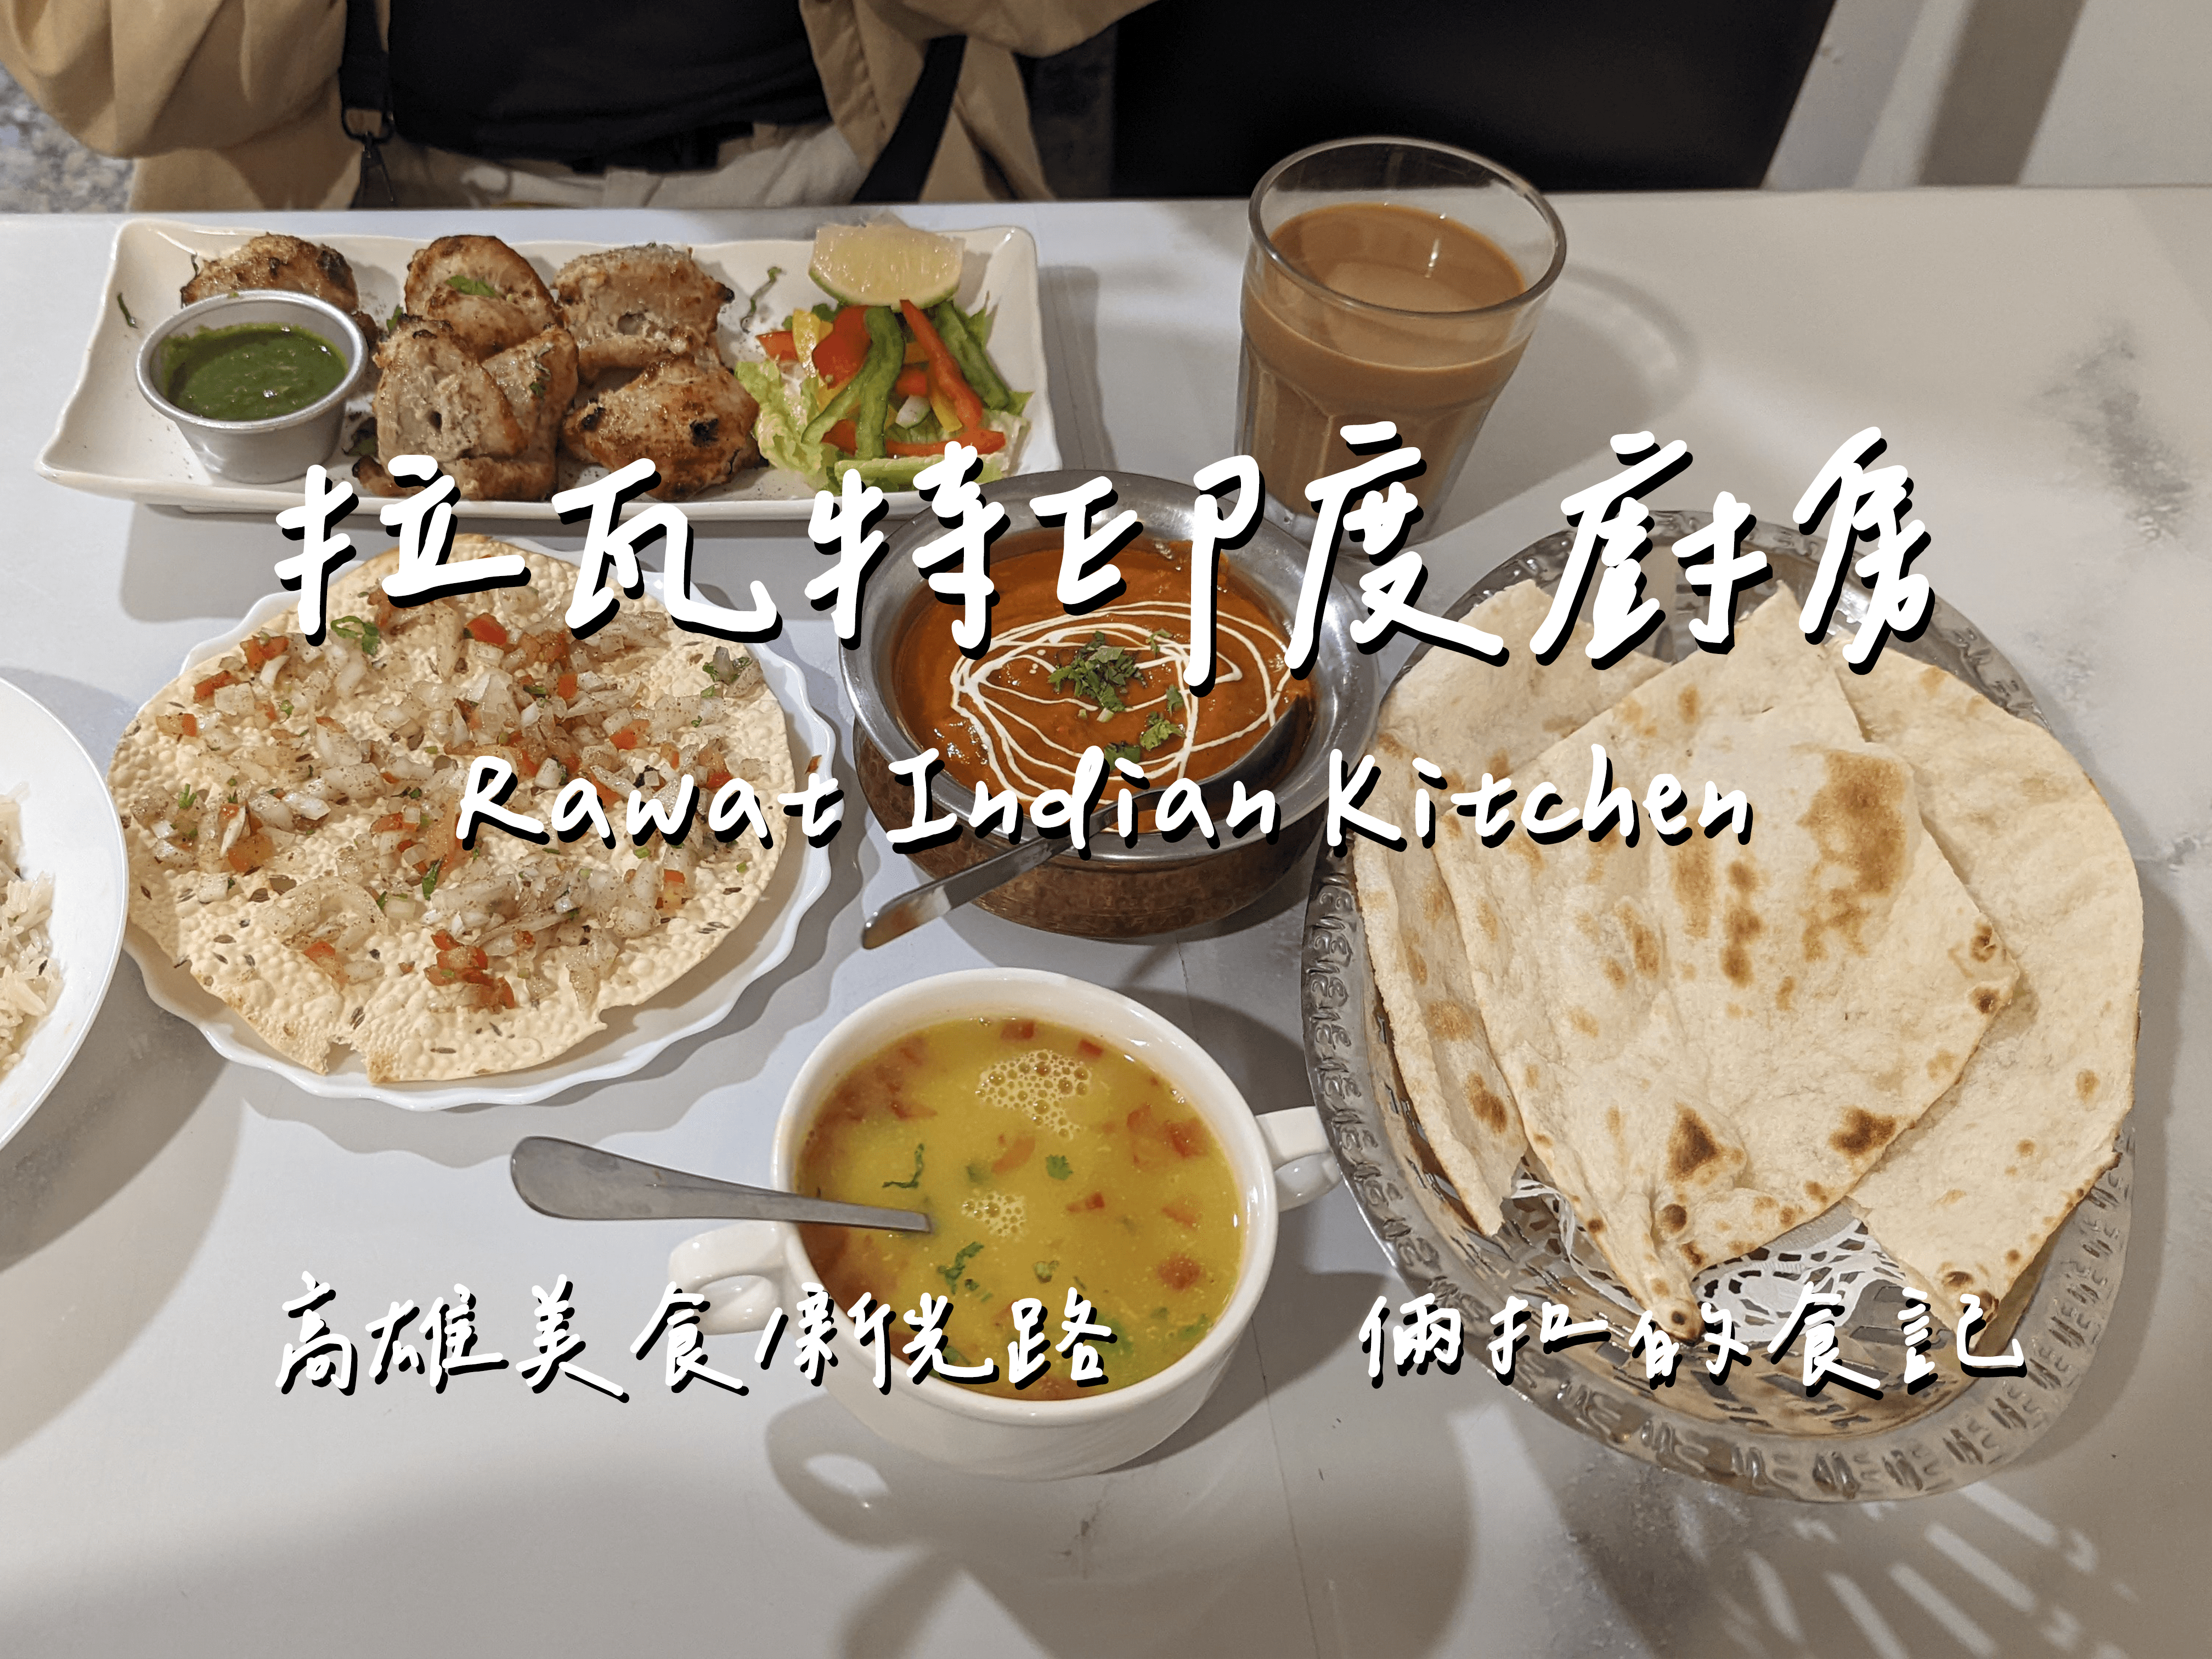 【高雄美食】Rawat Indian Kitchen 拉瓦特印度廚房 高雄總圖附近人氣印度咖哩店 最新完整菜單